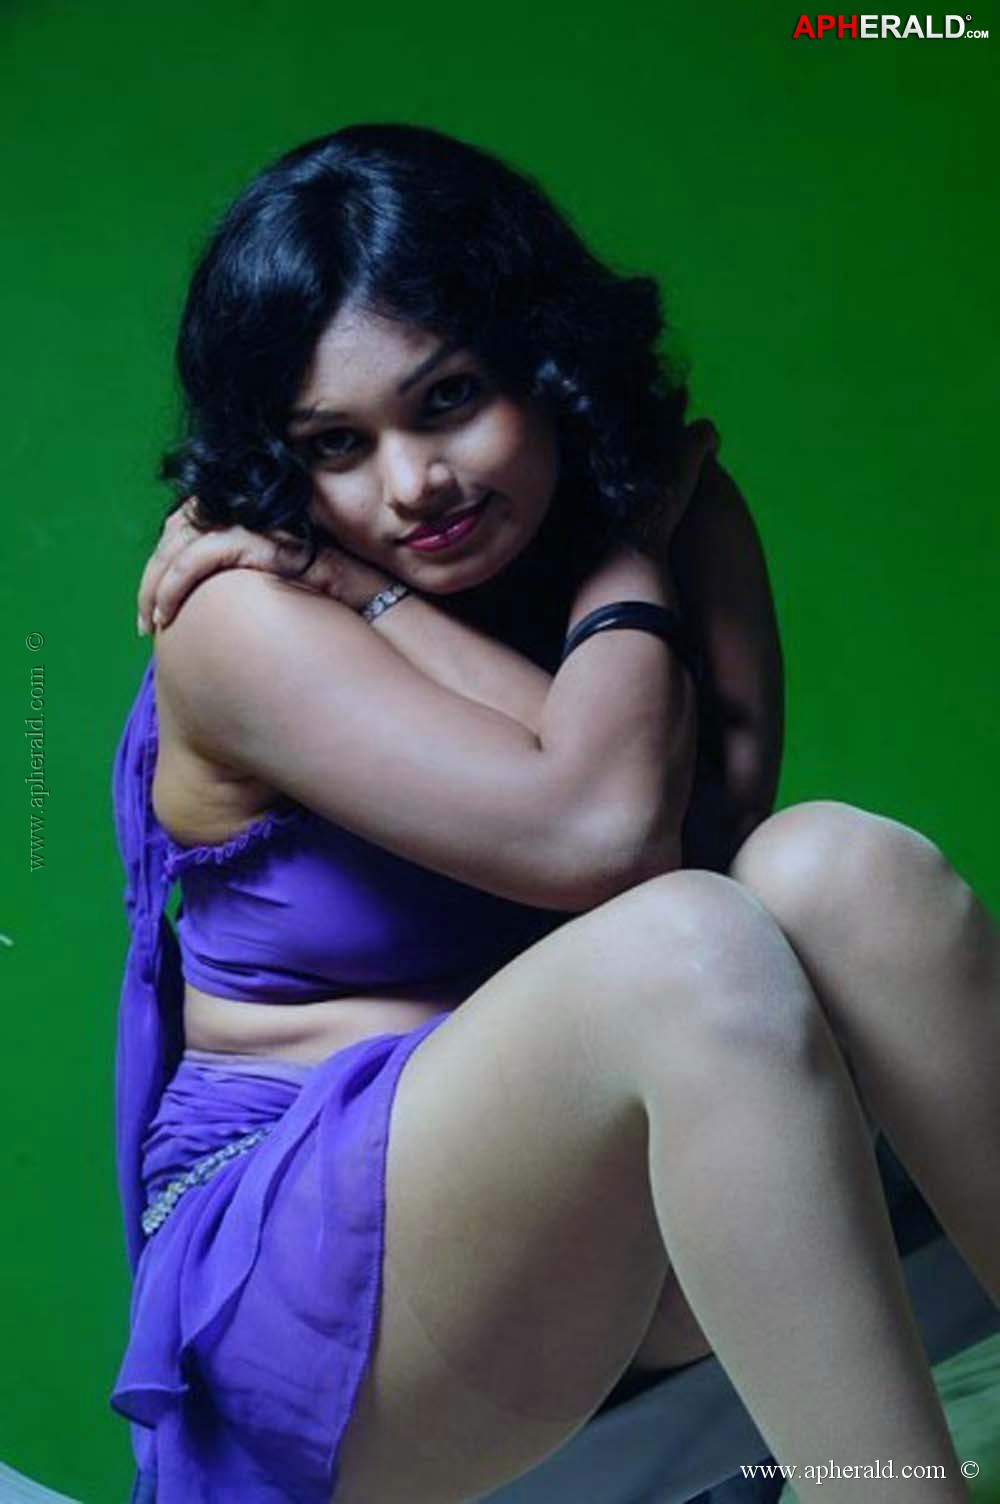 Mallu Hot Actress Photos